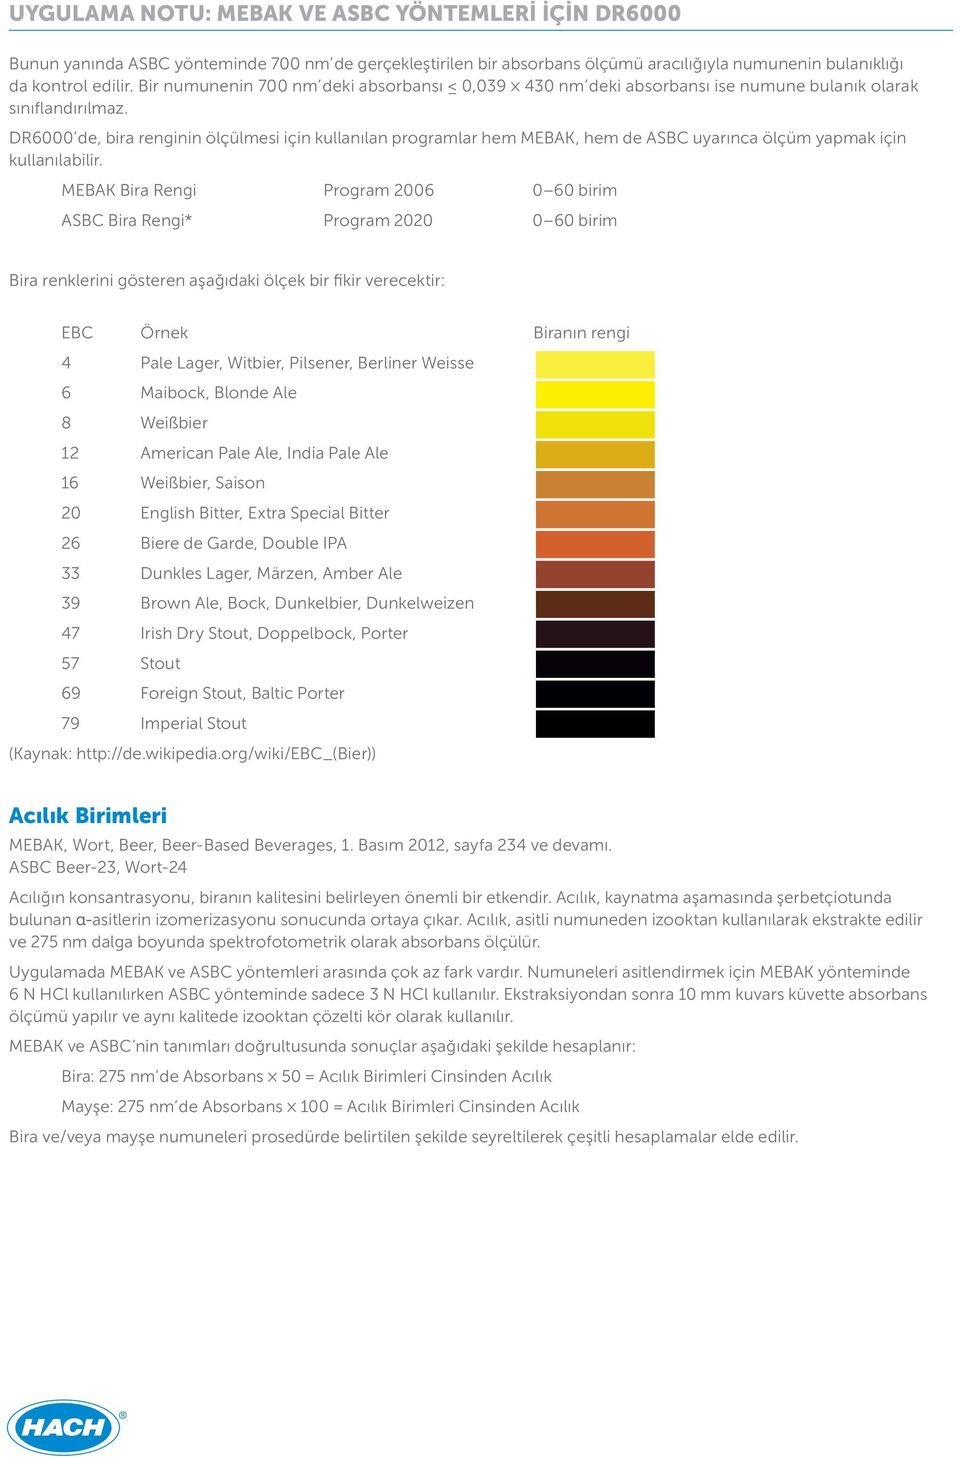 DR6000 de, bira renginin ölçülmesi için kullanılan programlar hem MEBAK, hem de ASBC uyarınca ölçüm yapmak için kullanılabilir.